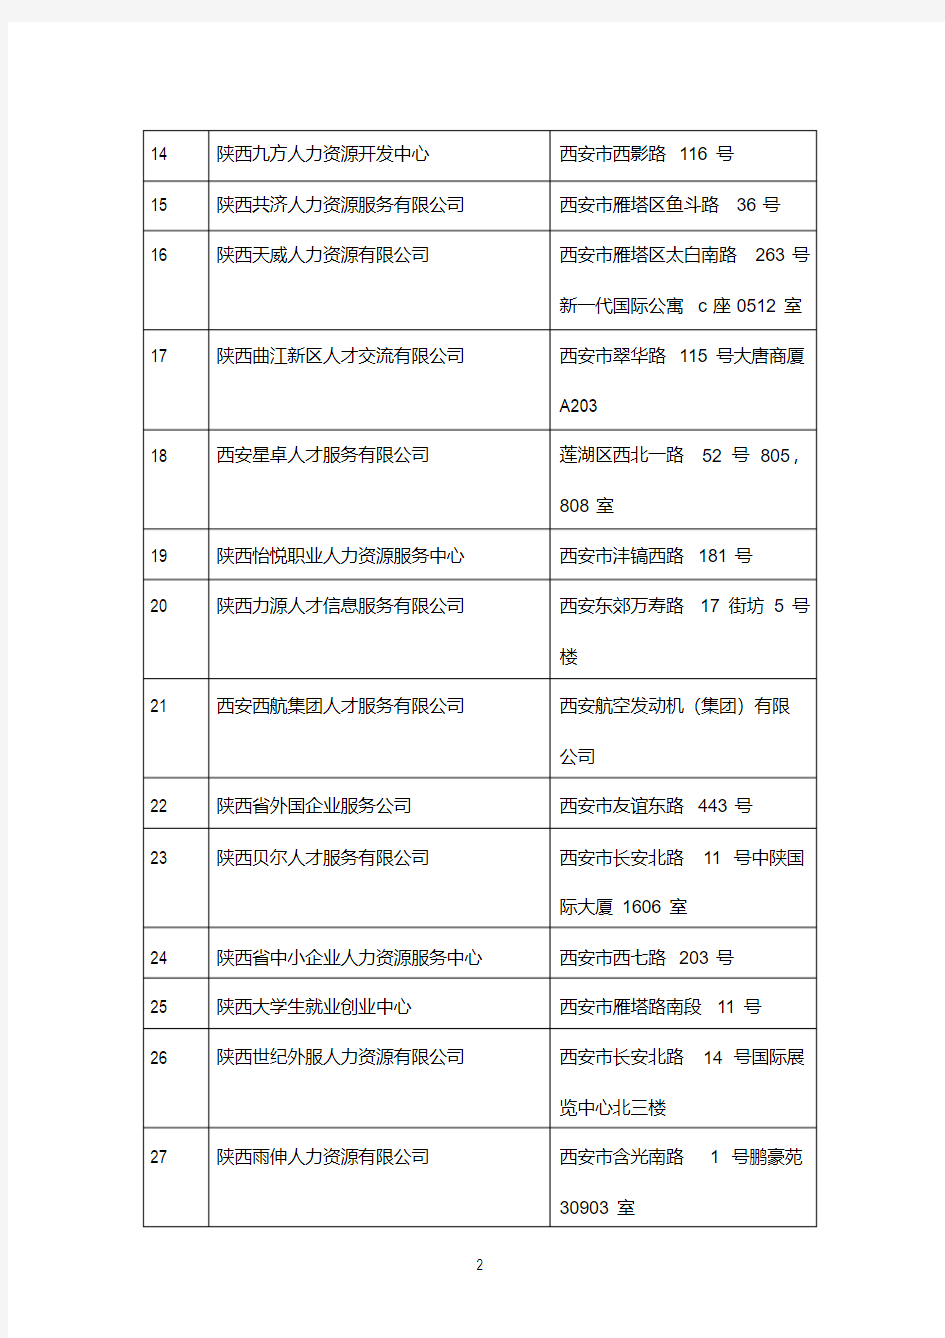 陕西省省属人力资源公司名单